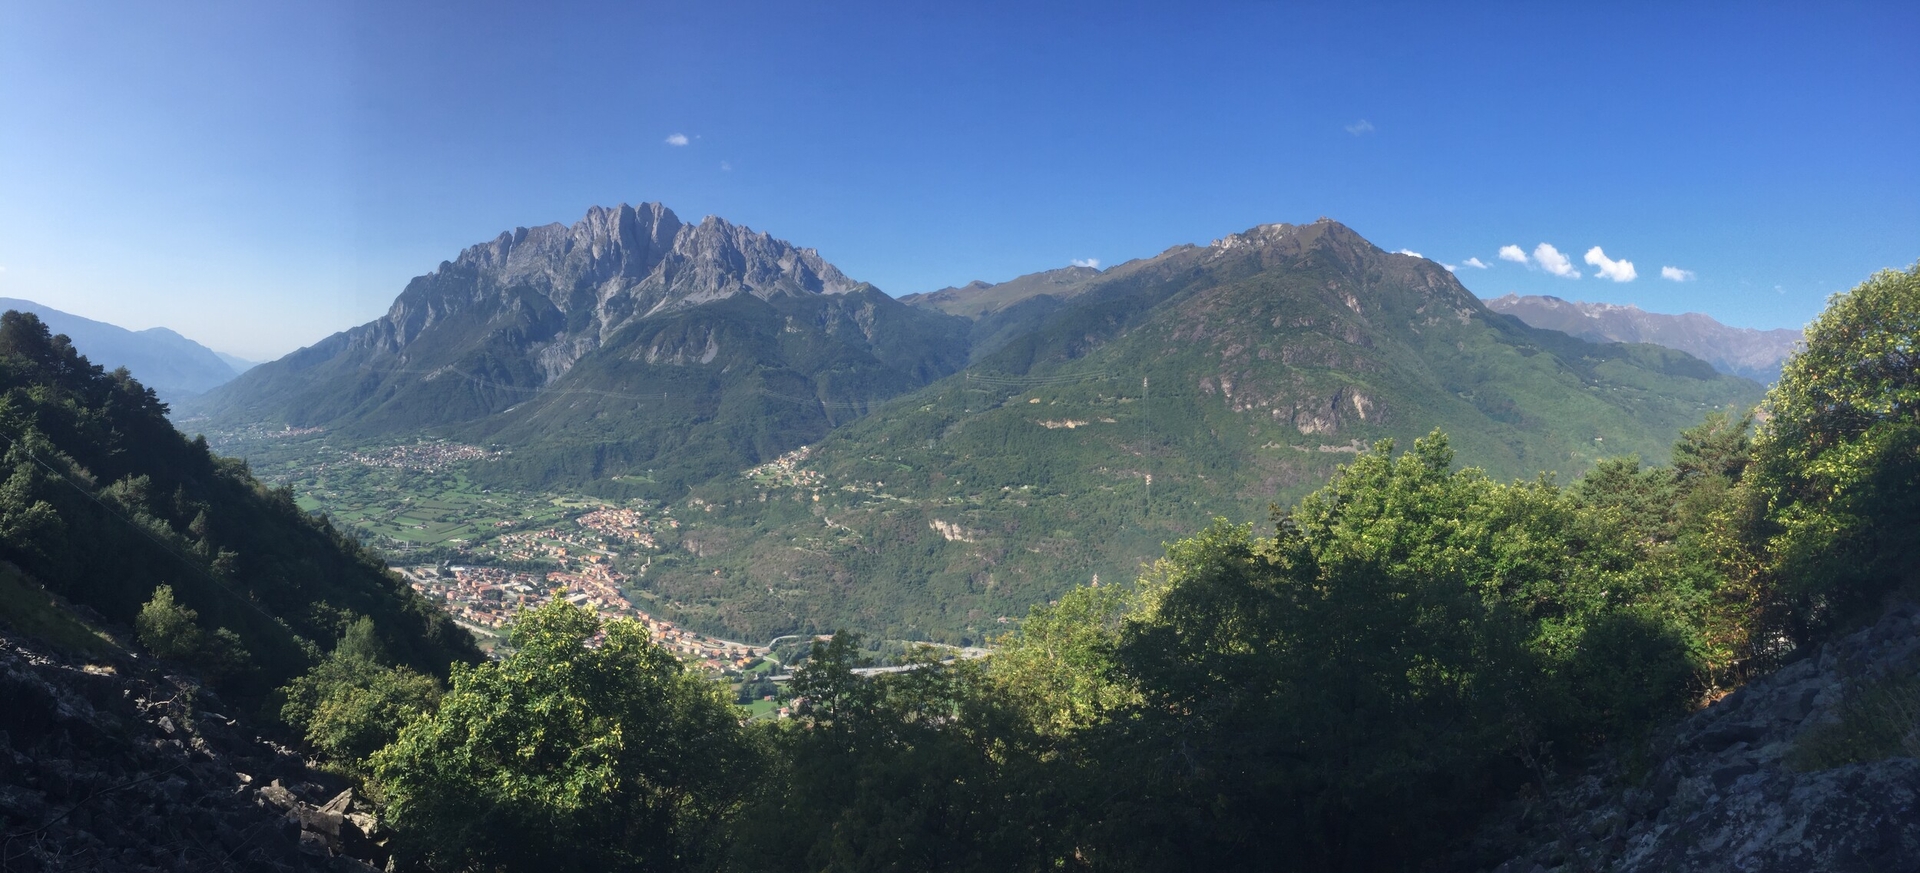 Felsritzungen im Val Camonica